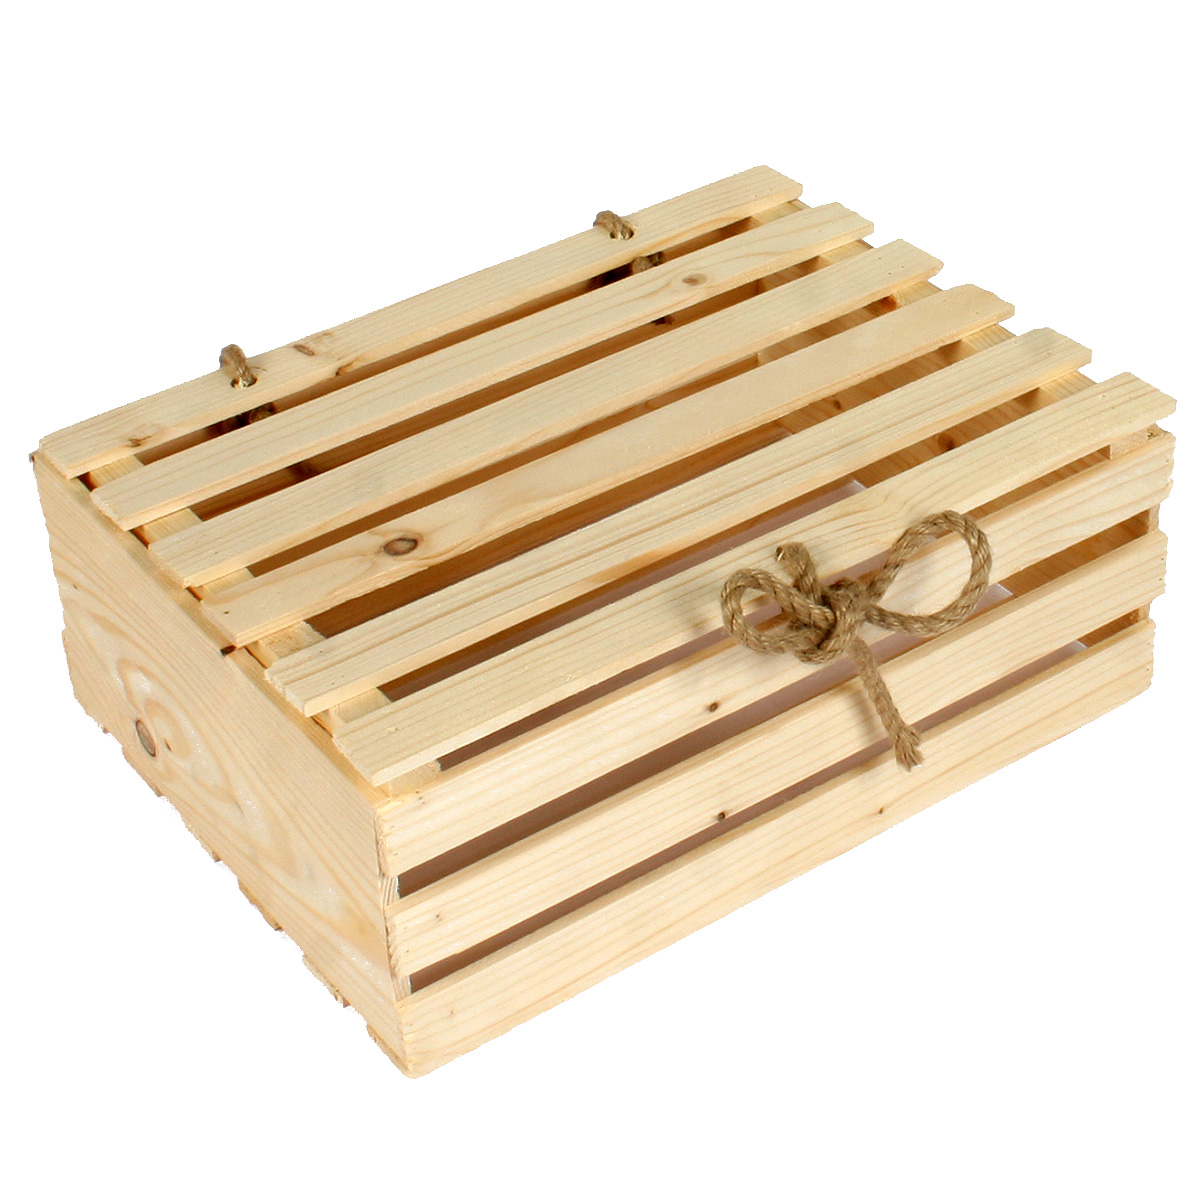 Коробка деревянная Grand Gift 305 прямоугольная с крышкой 25х34х12,5 см подарочная коробка с отделением для сладостей подарочных наборов цветочных композиций